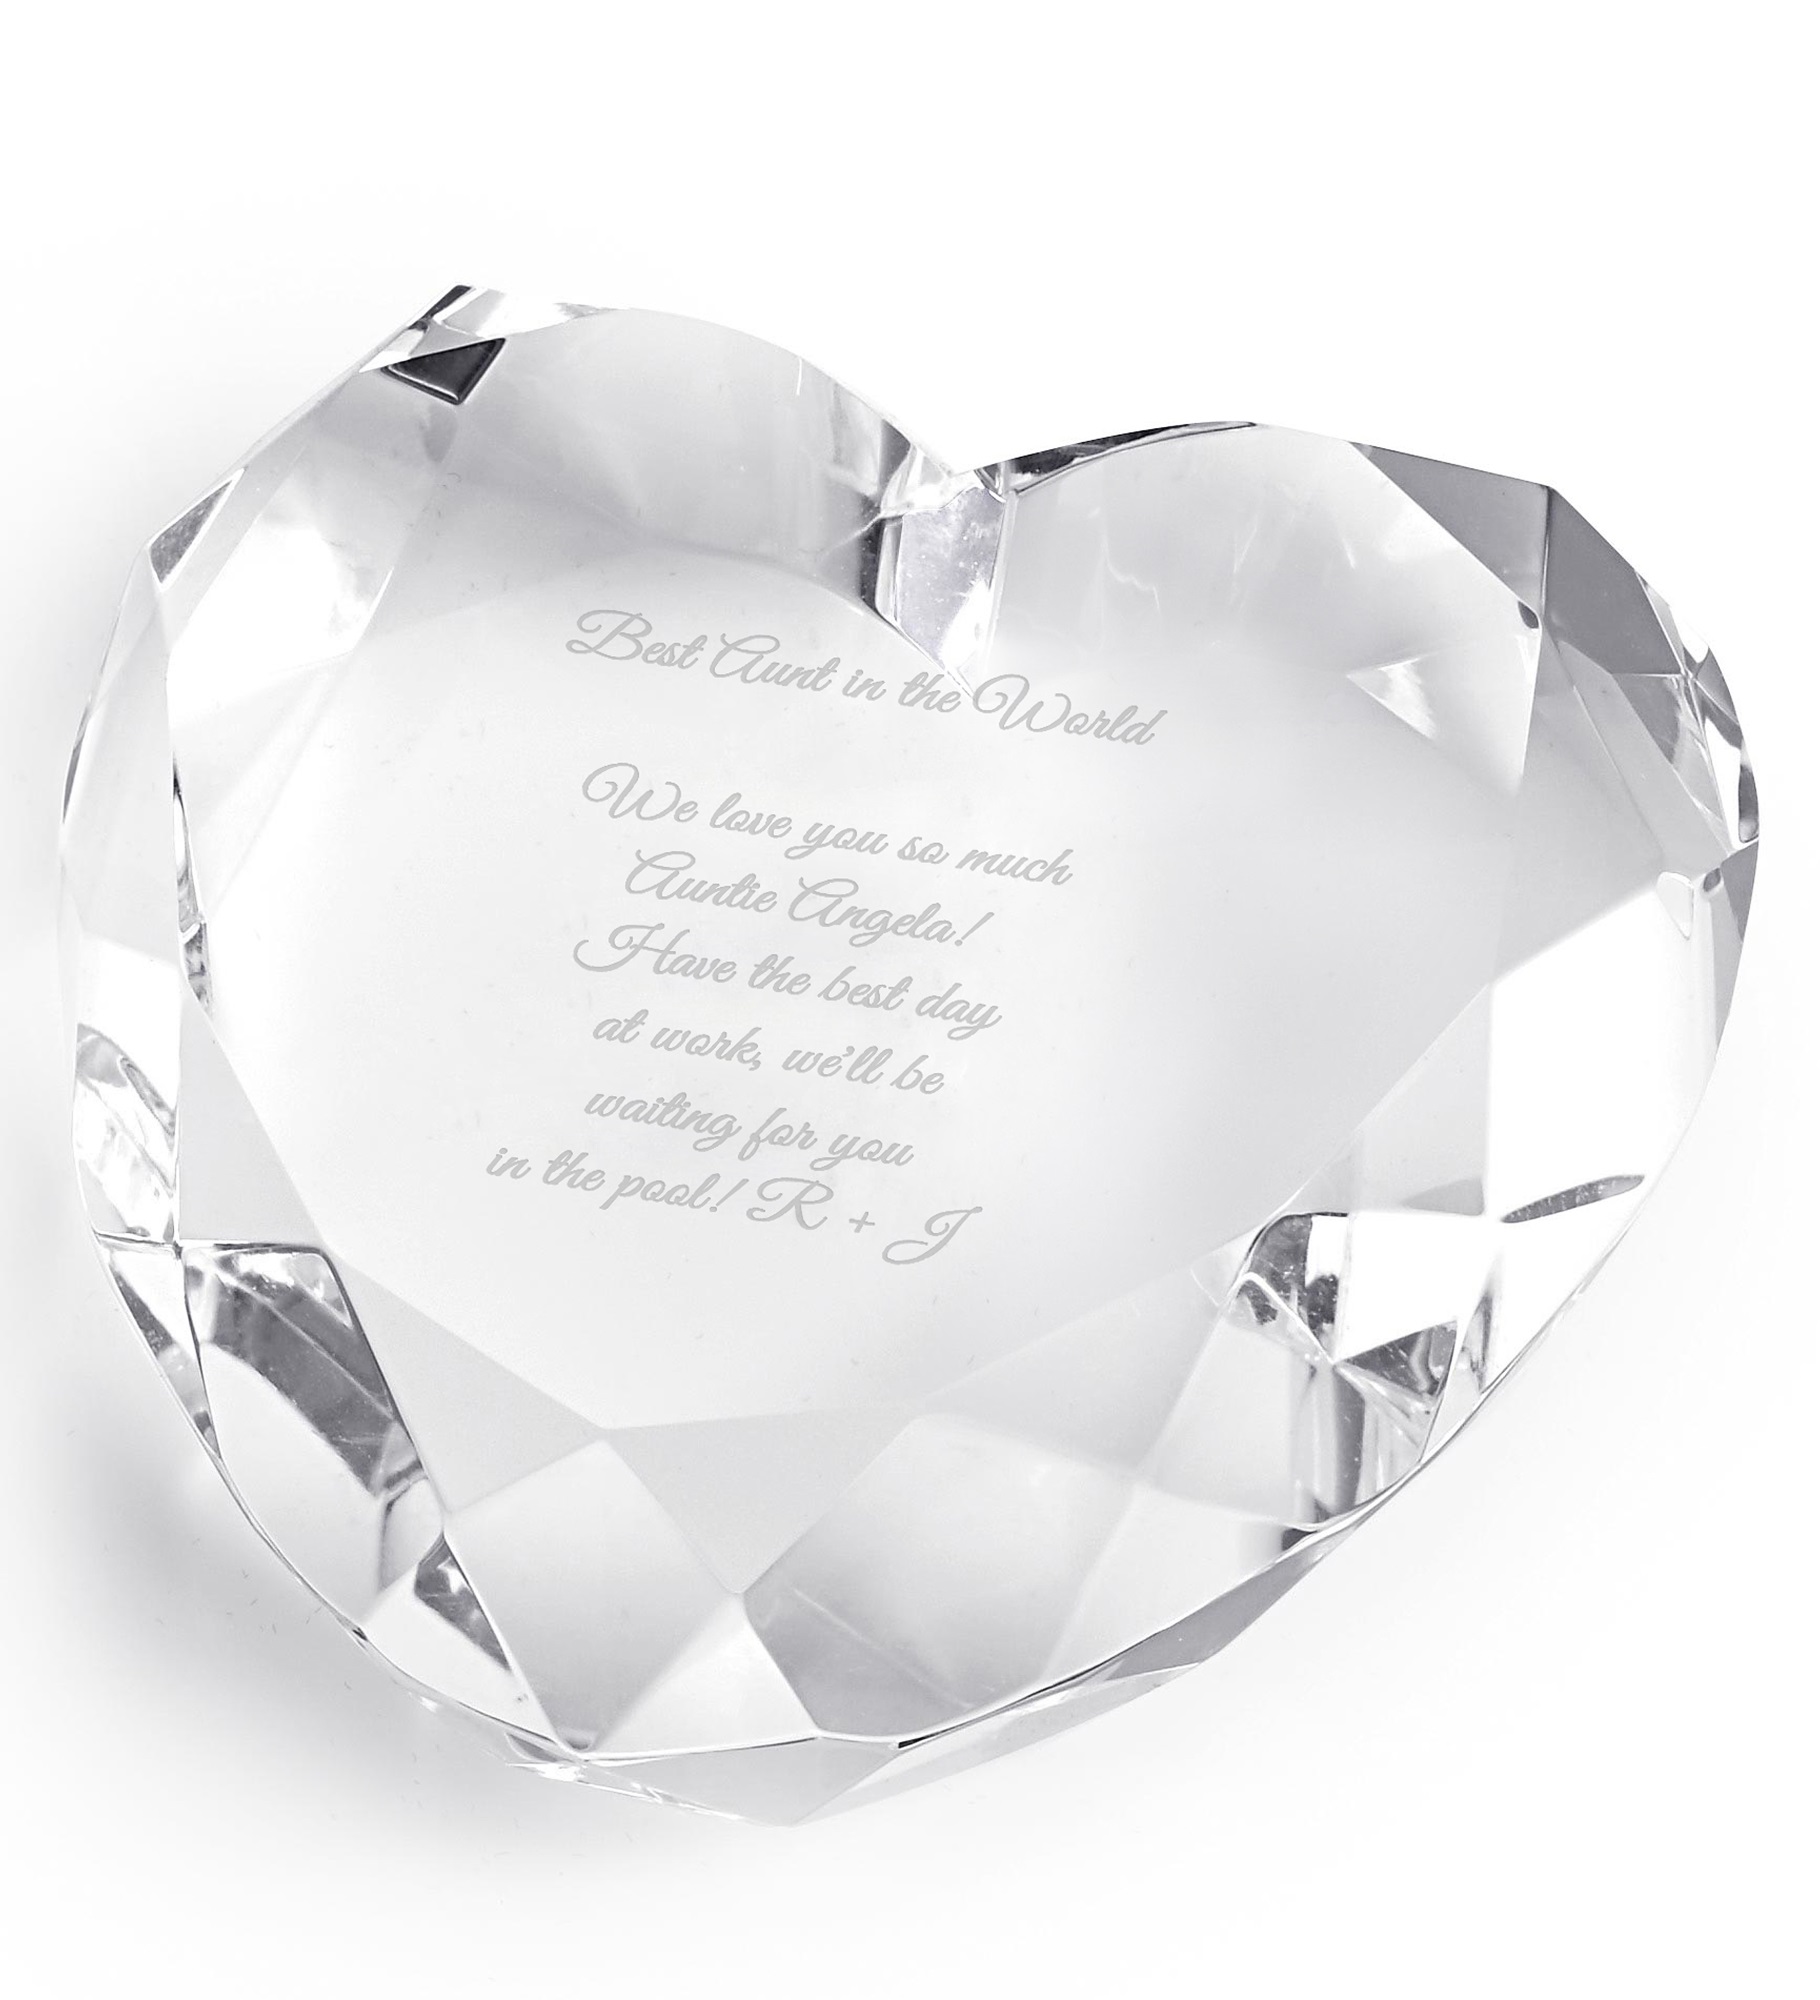 Engraved Crystal Heart Keepsake Paperweight